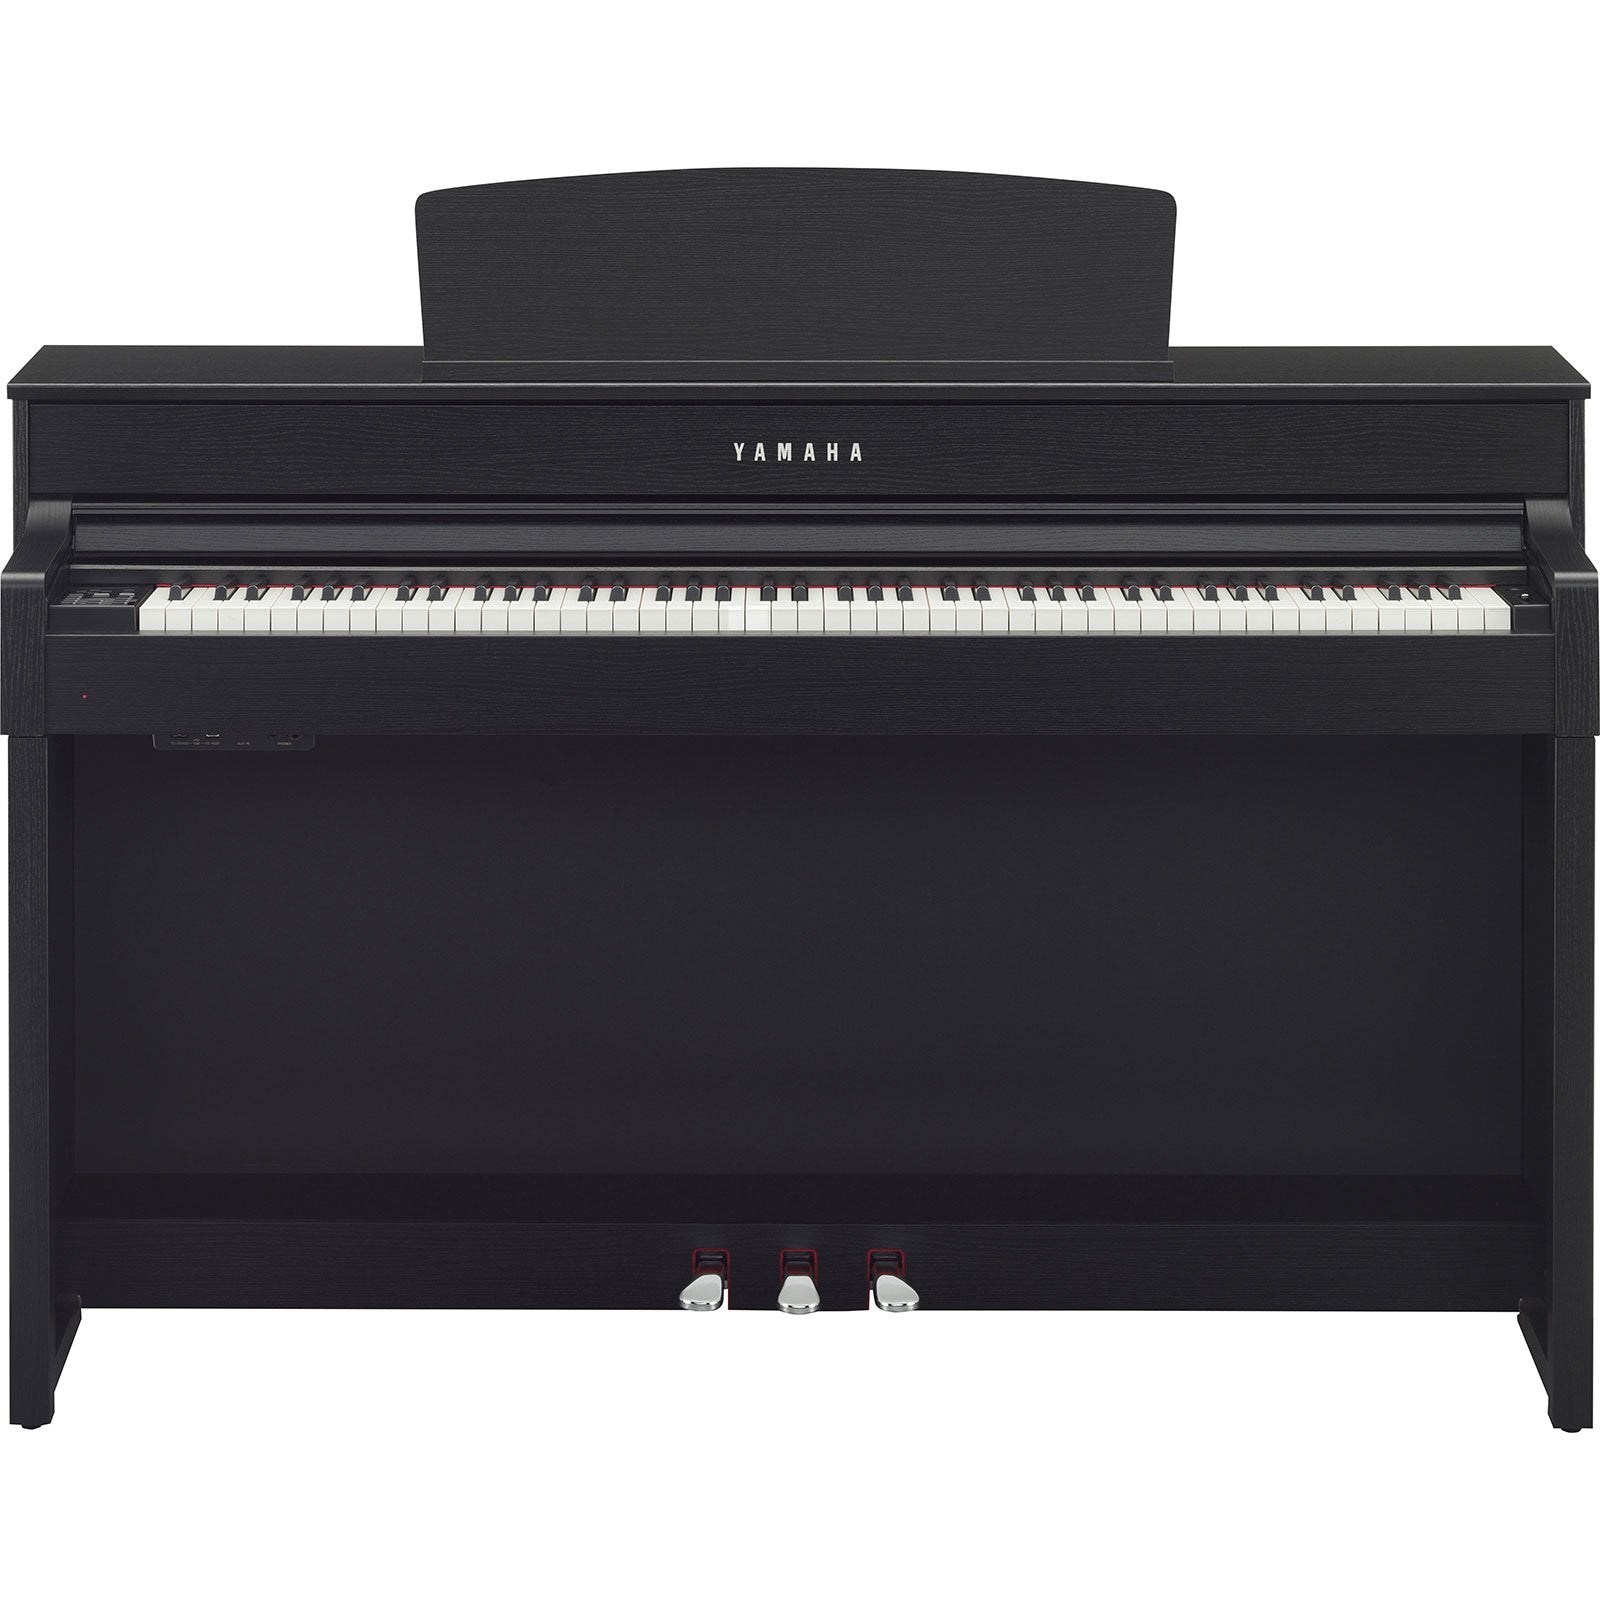 Đàn Piano Điện Yamaha CLP545 - Qua Sử Dụng